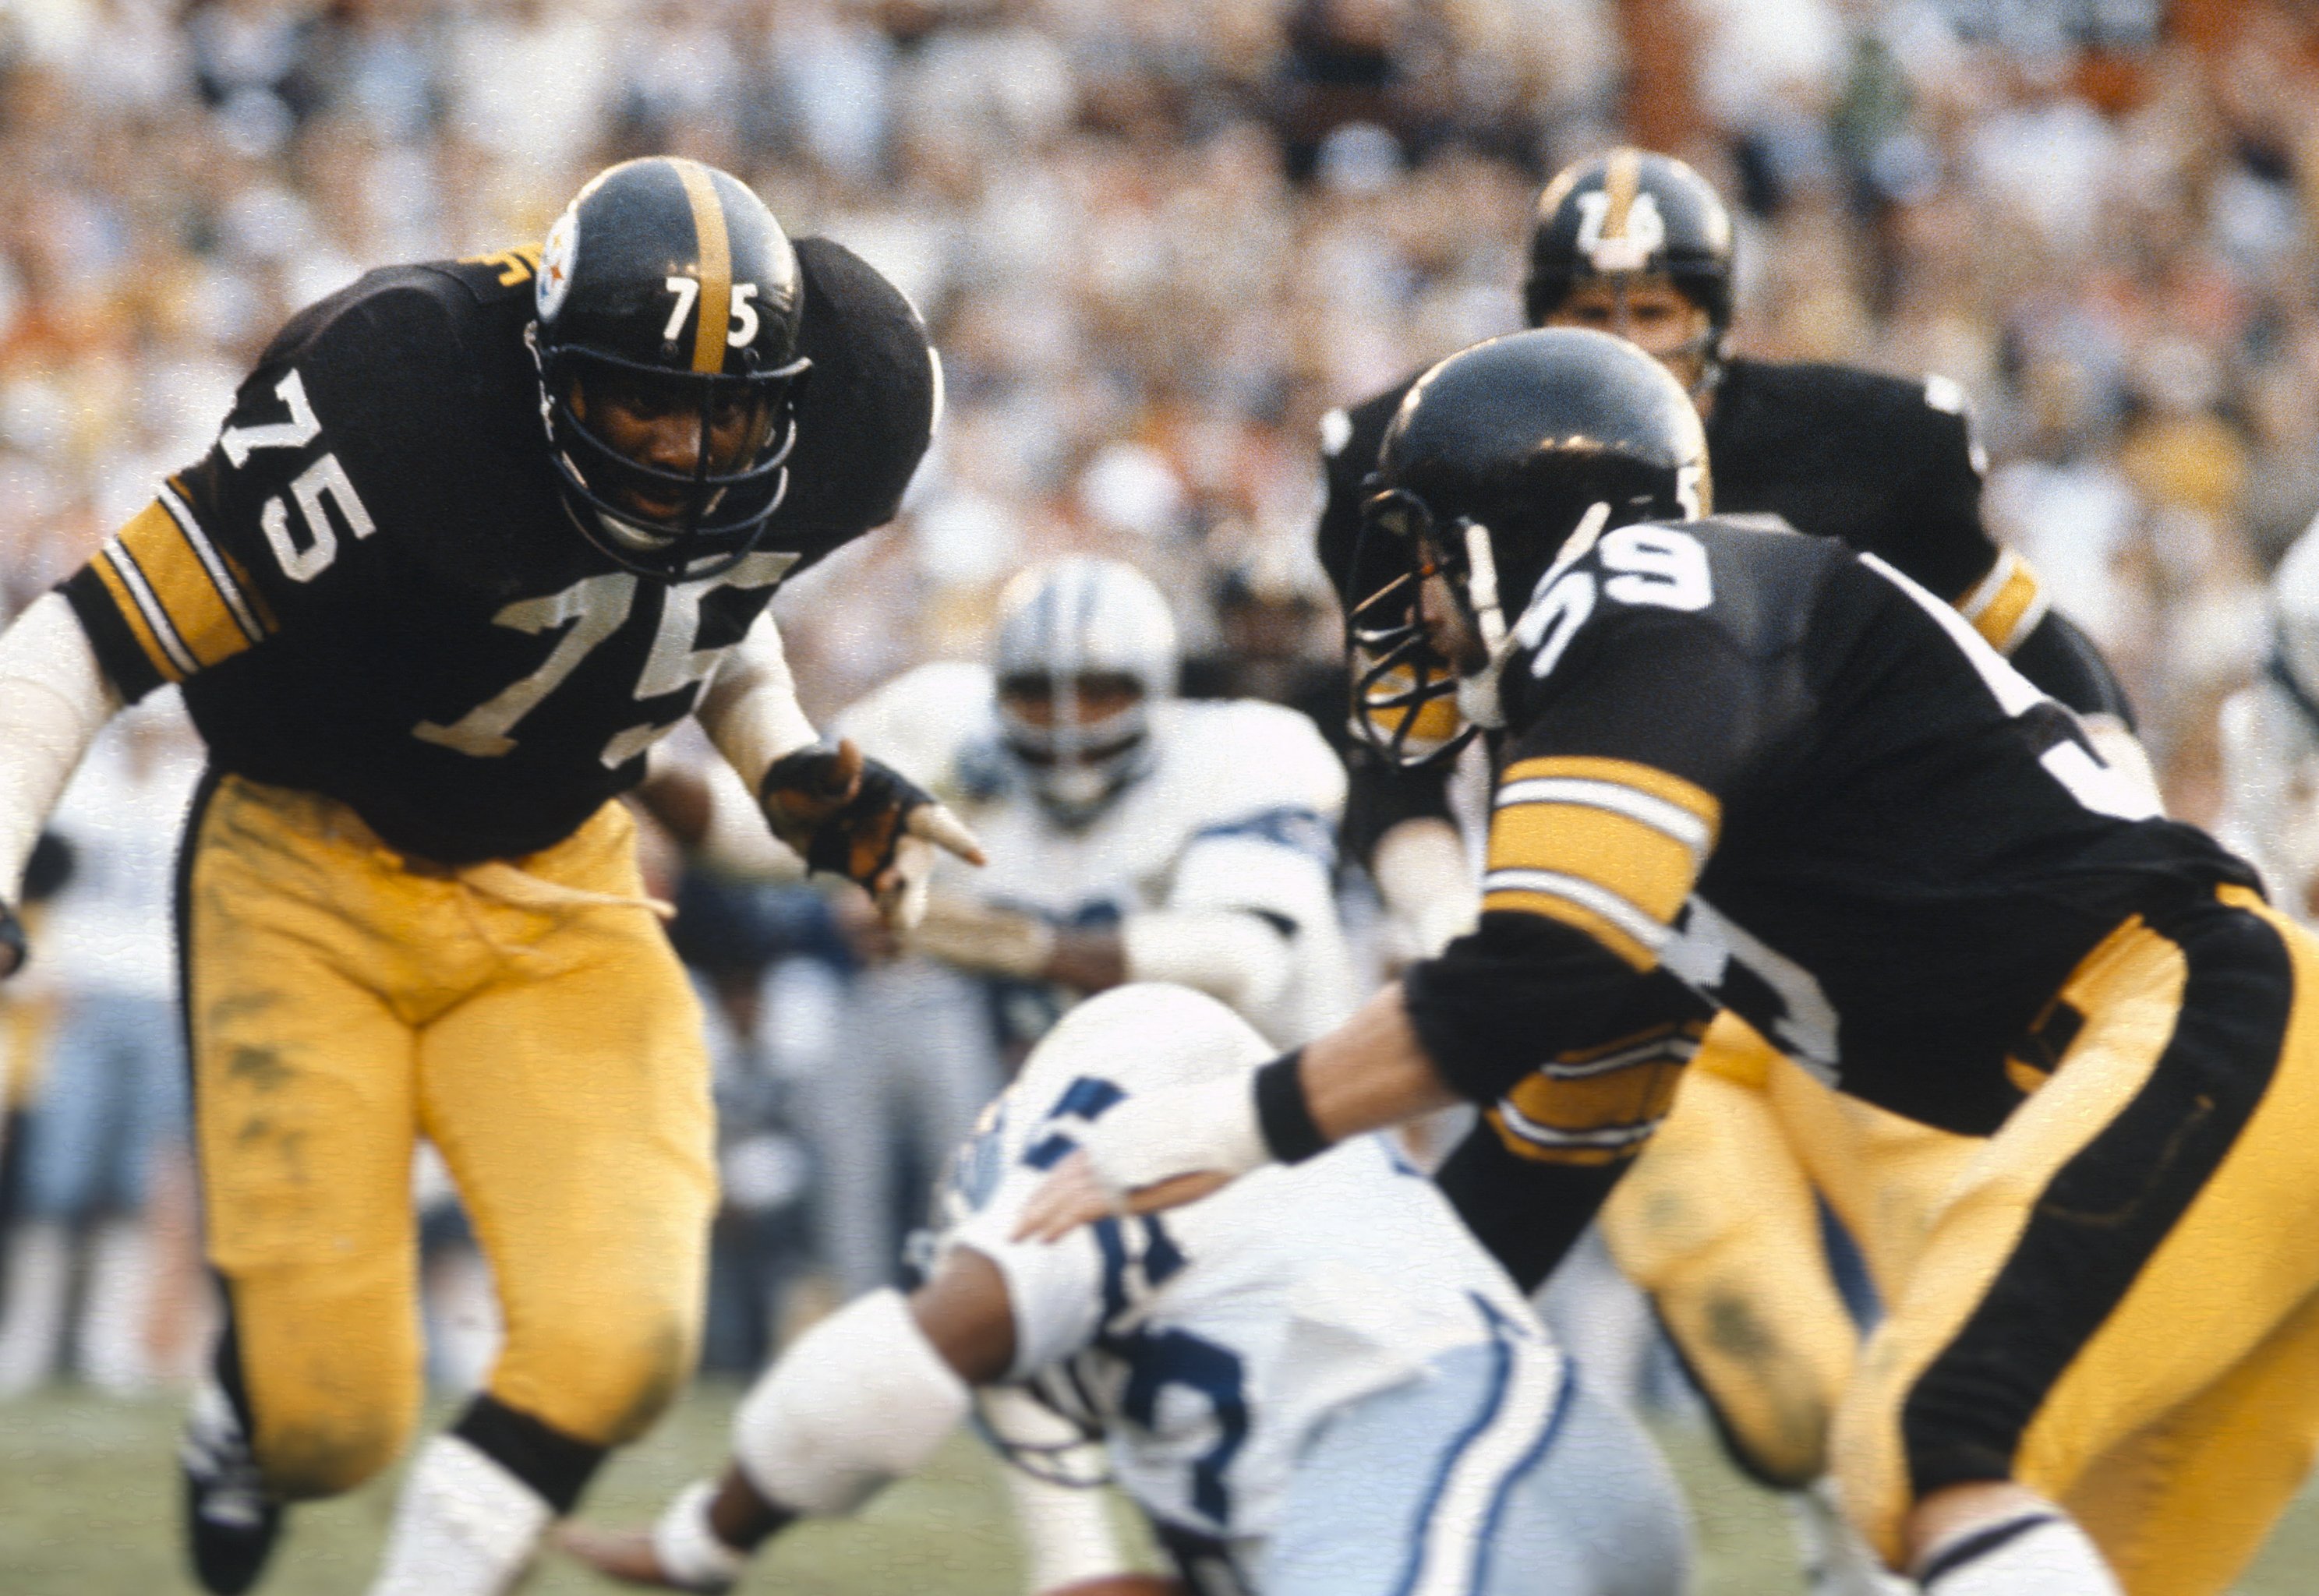 Mean Joe Greene helped turn lowly Steelers franchise into a winner